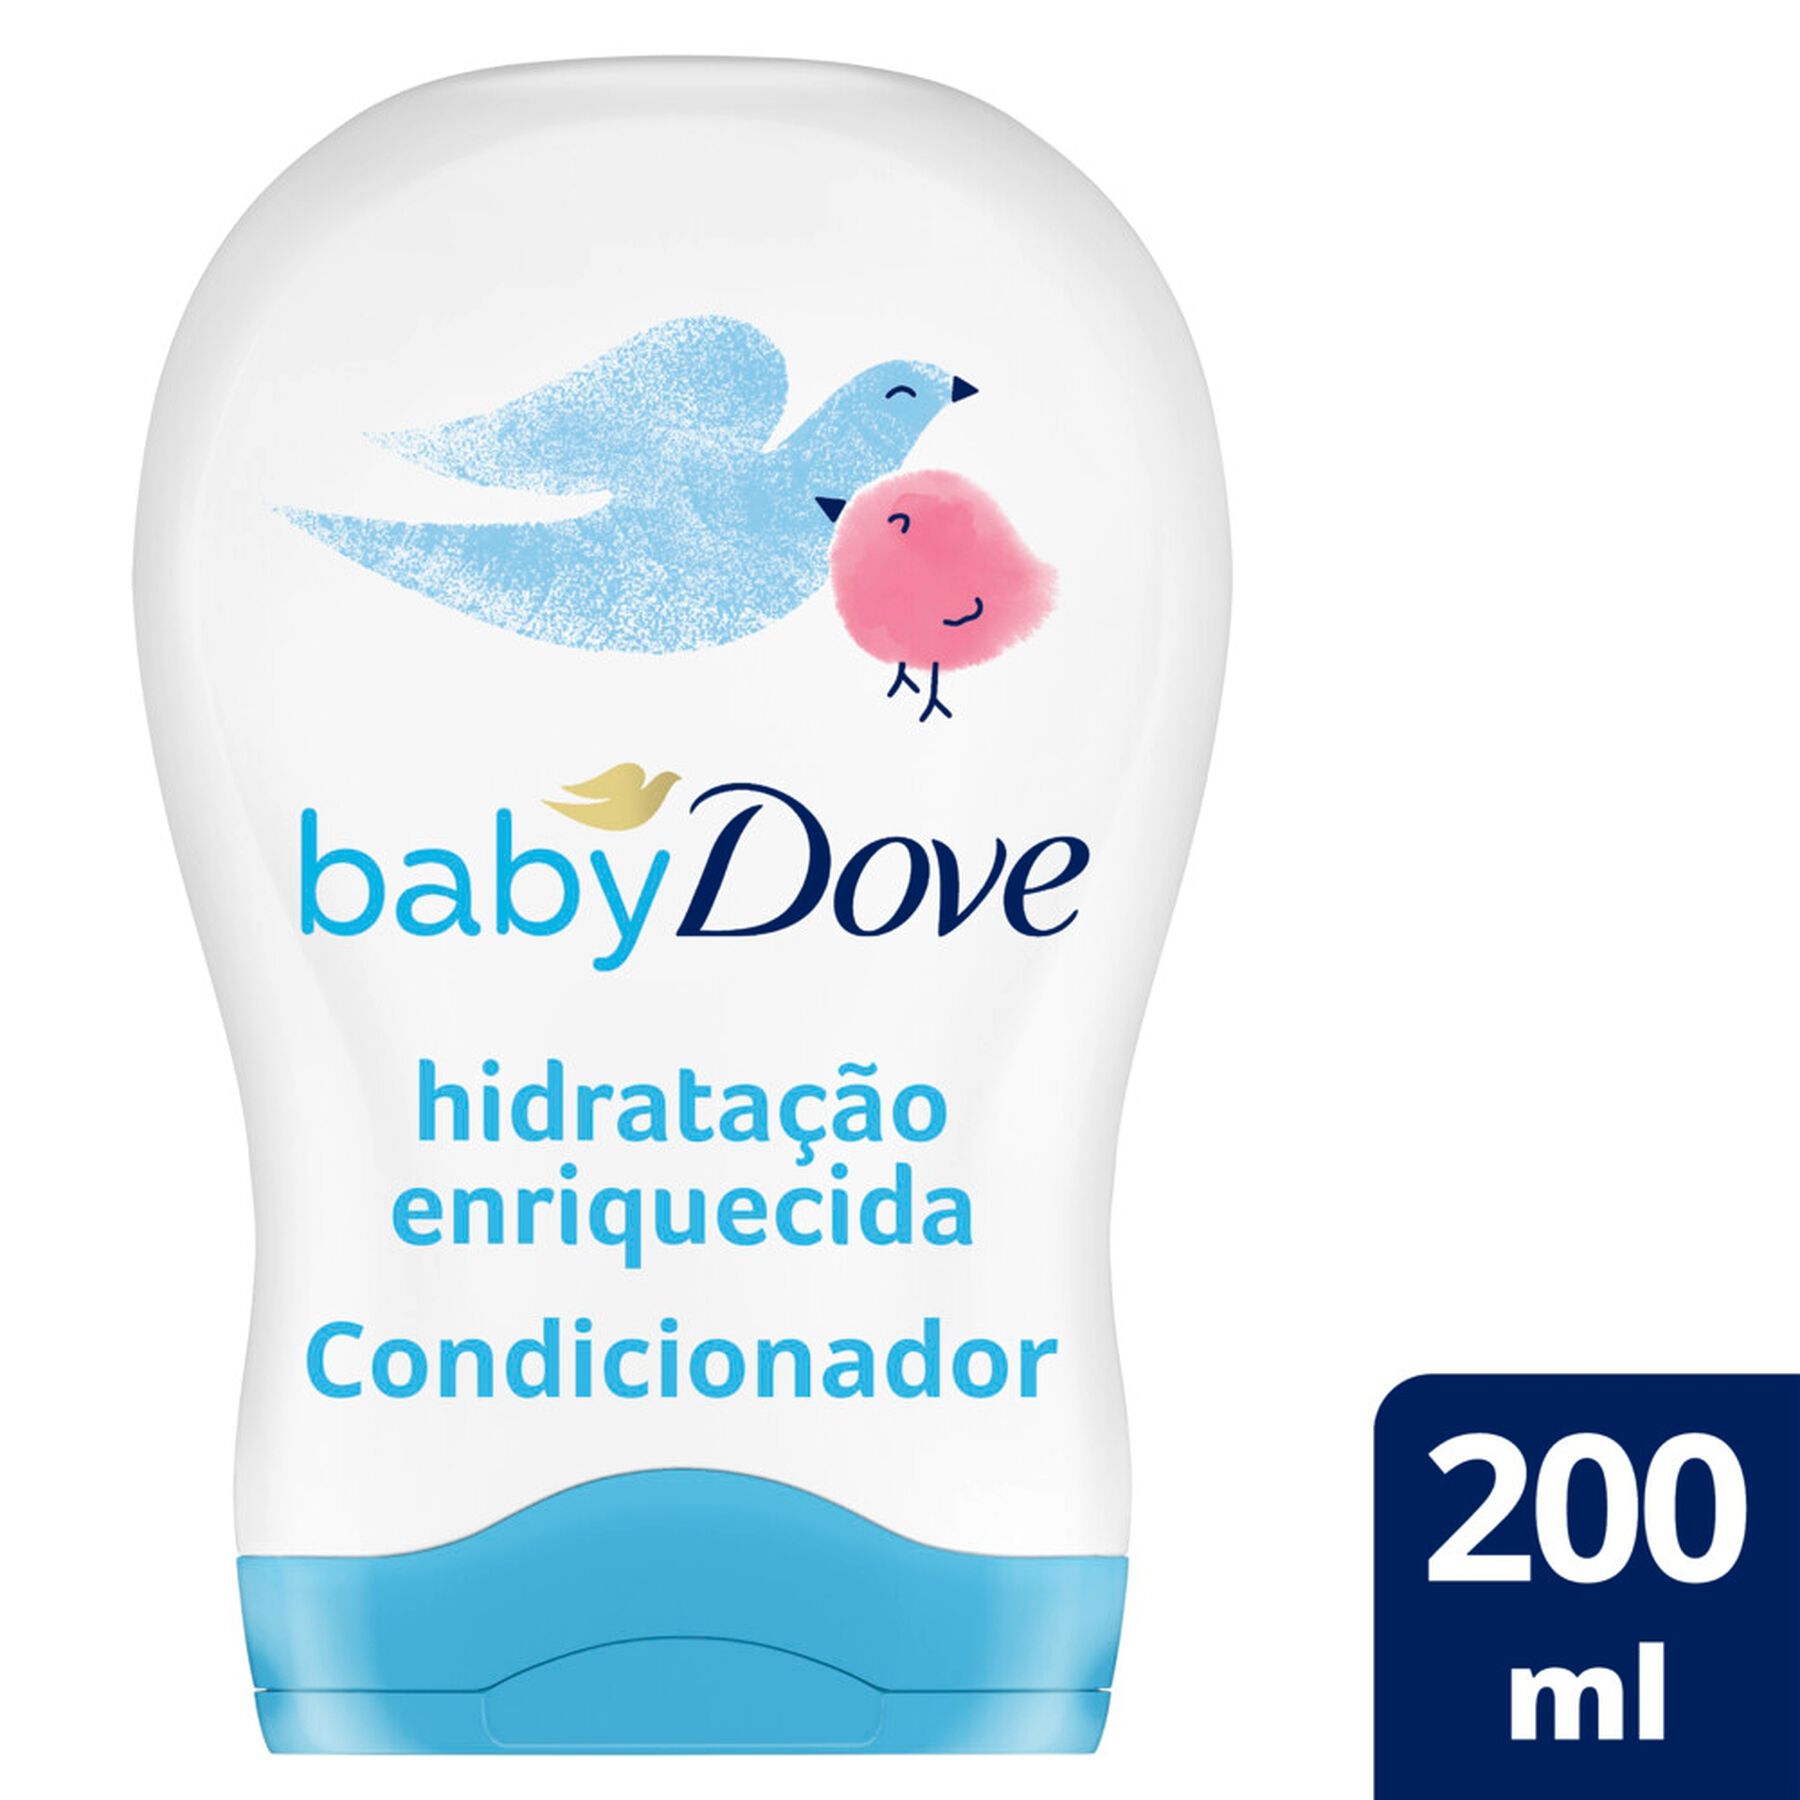 Condicionador Hidratação Enriquecida Dove Baby Frasco 200ml